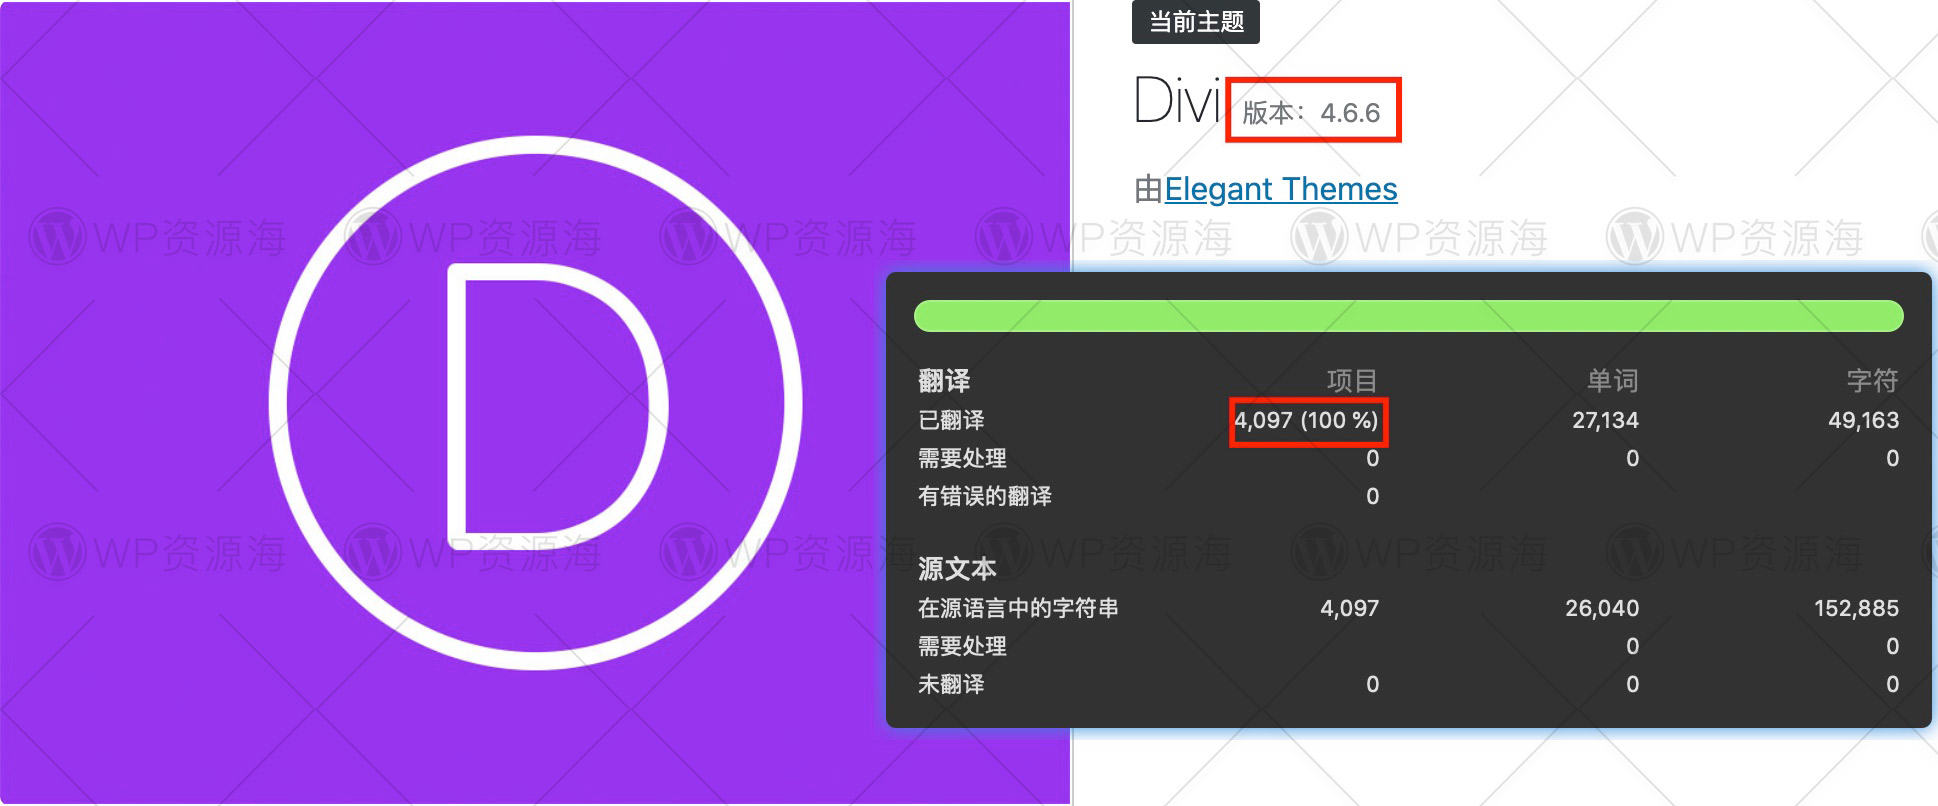 【带key】Divi主题v4.8.1最新中文版100%汉化率 支持在线更新/导入